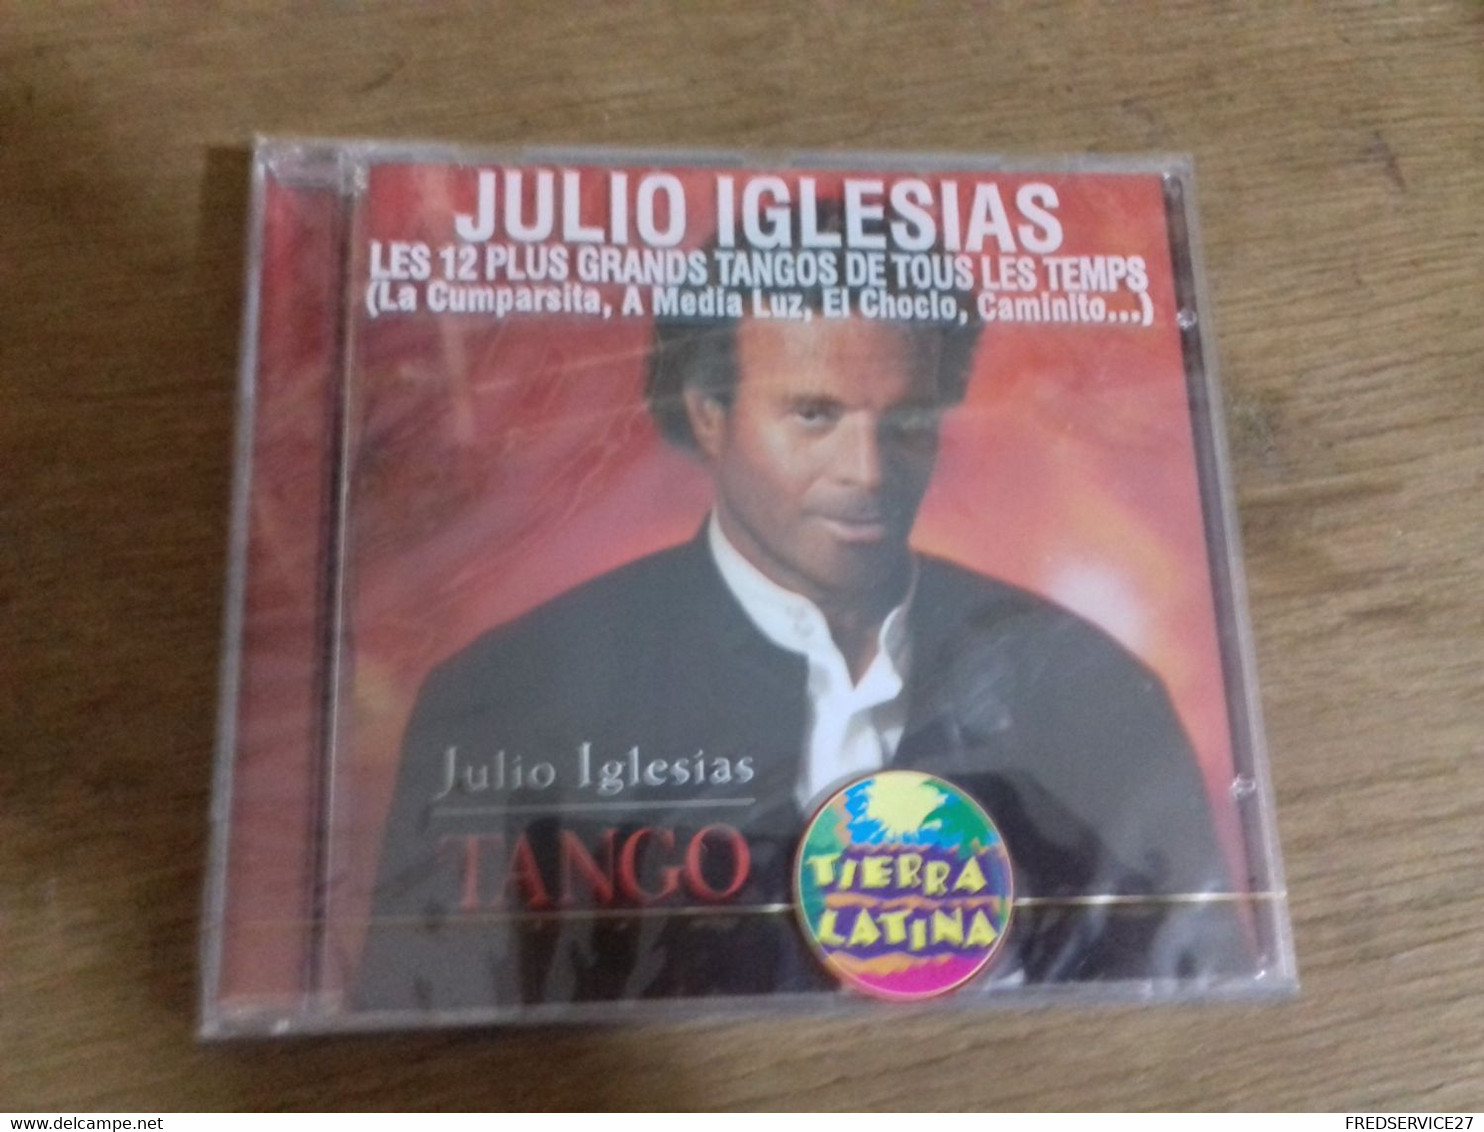 56  //   CD  JULIO IGLESIAS  "TANGO"    LES 12 PLUS GRANDS TANGOS DE TOUS LES TEMPS - Autres - Musique Espagnole